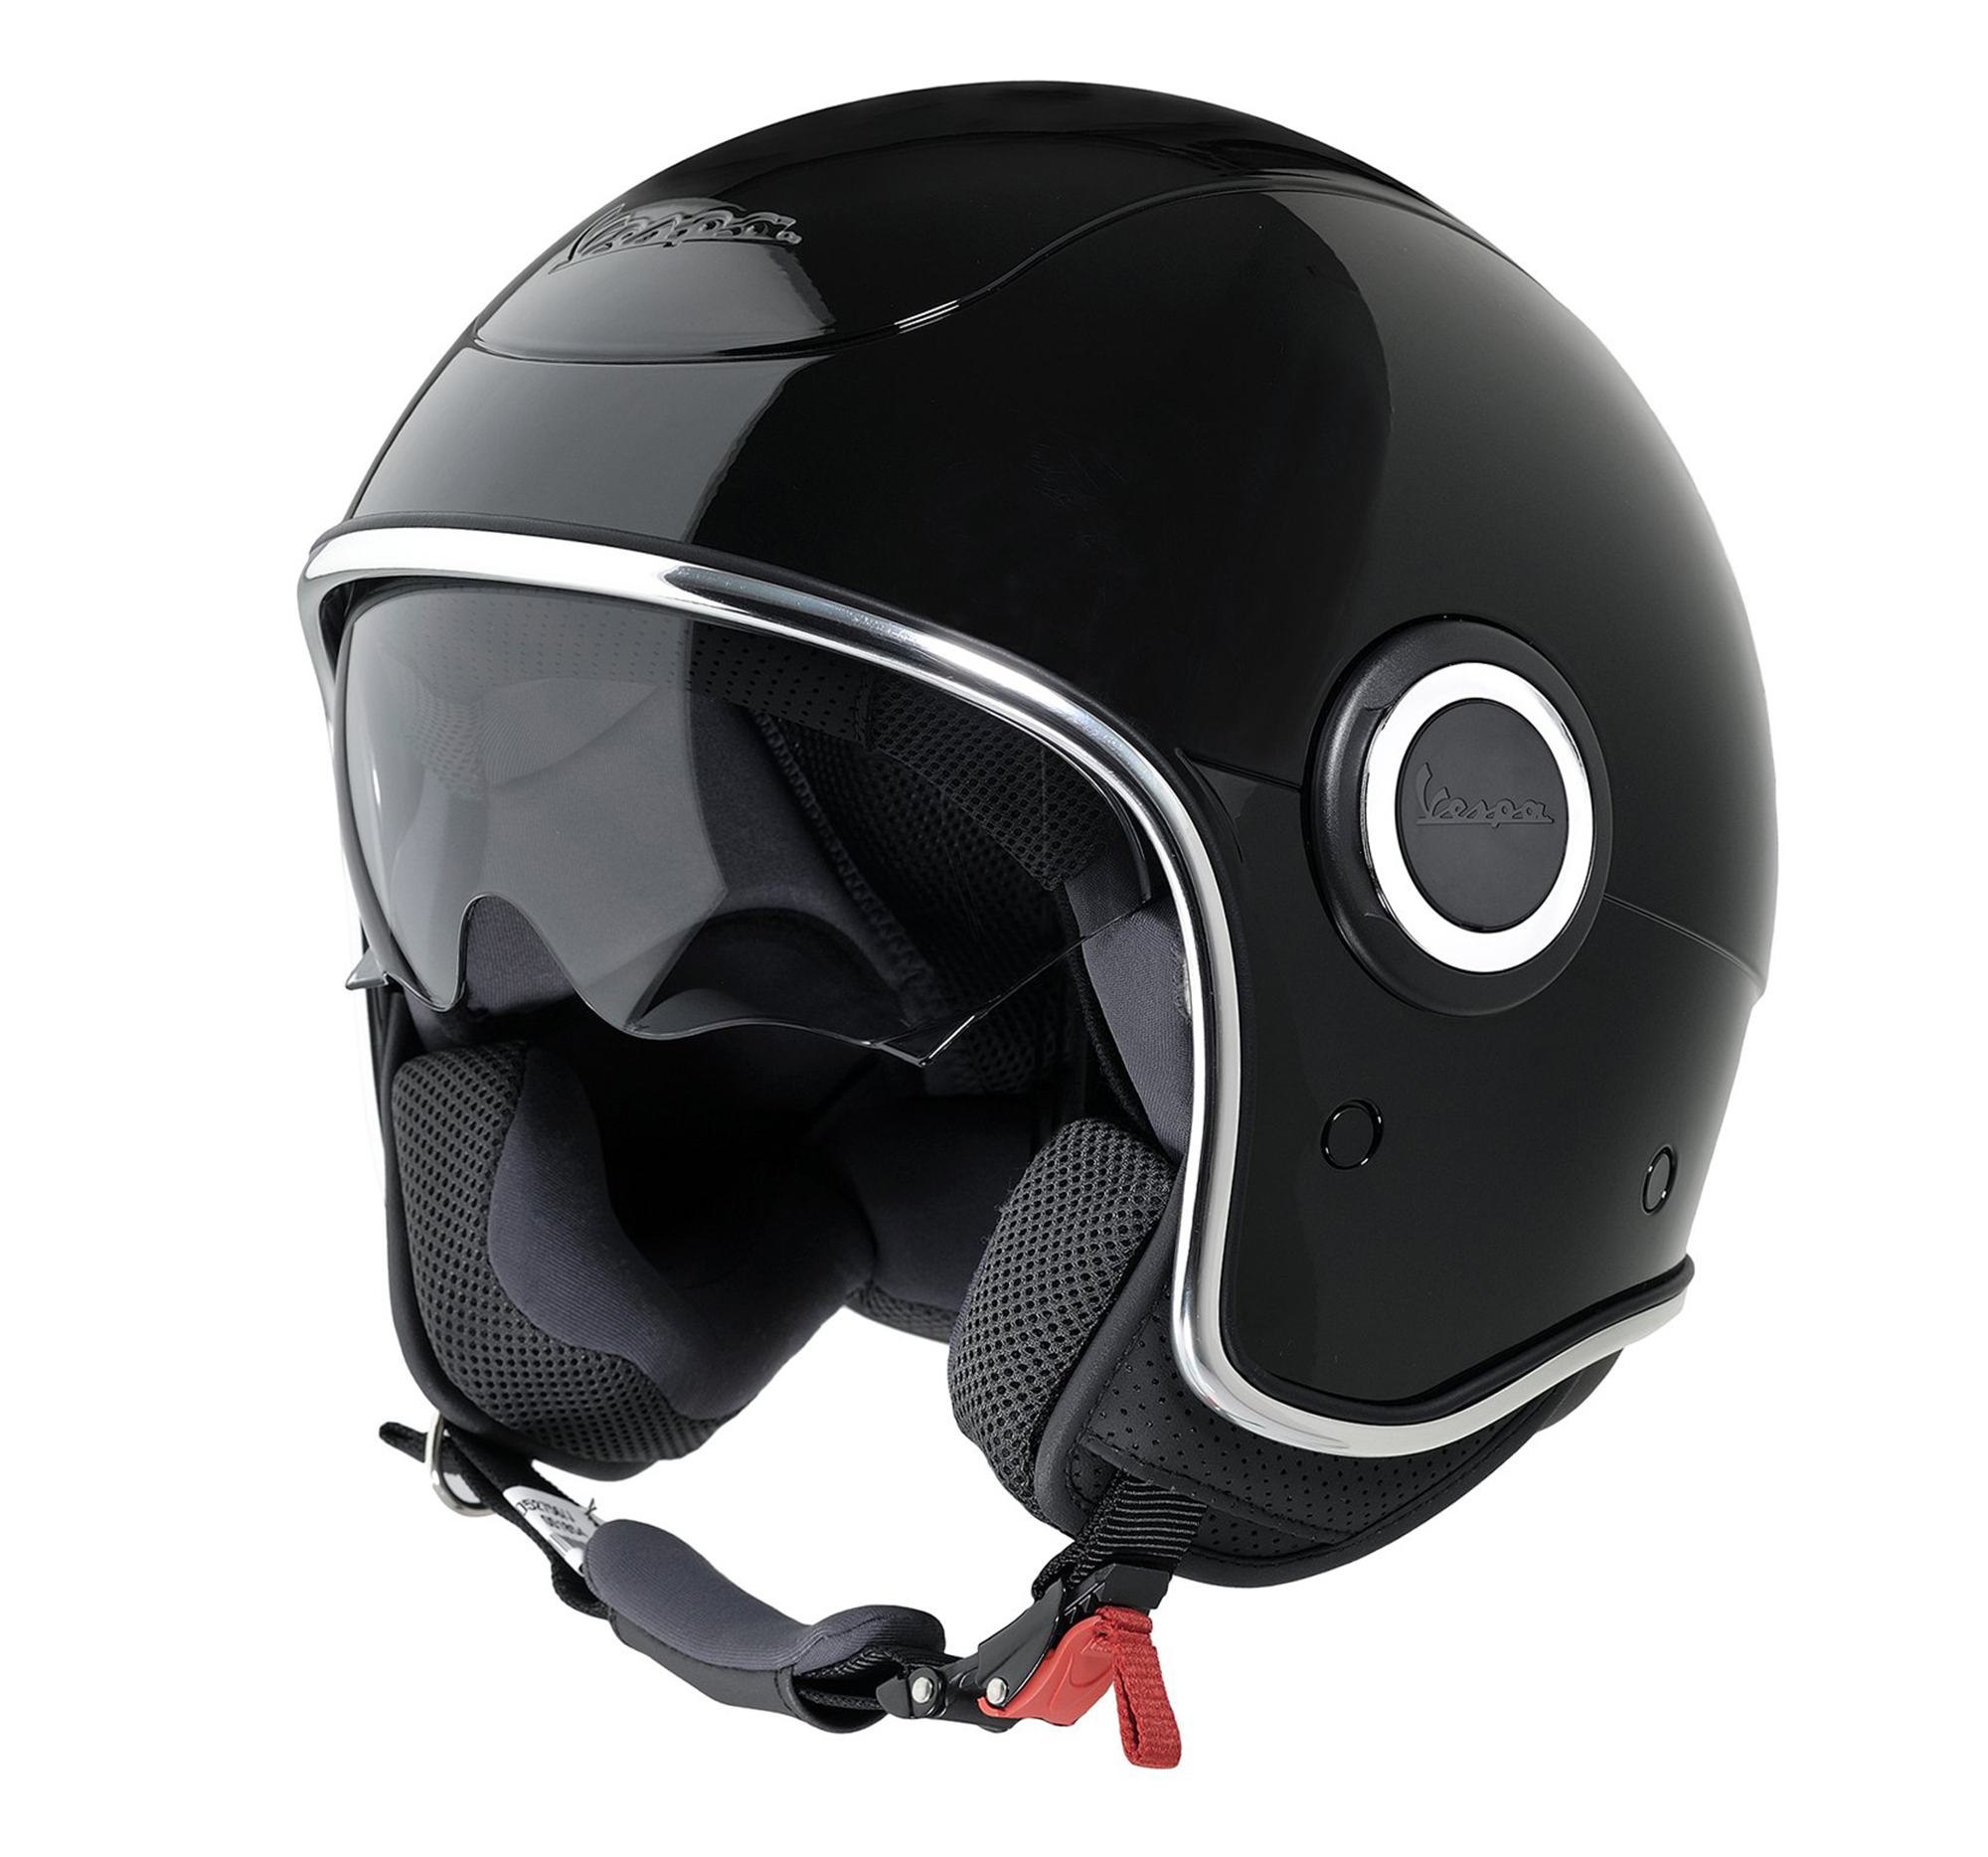 Vespa jet helmet black Piaggio-Vespa Online Shop by RWN